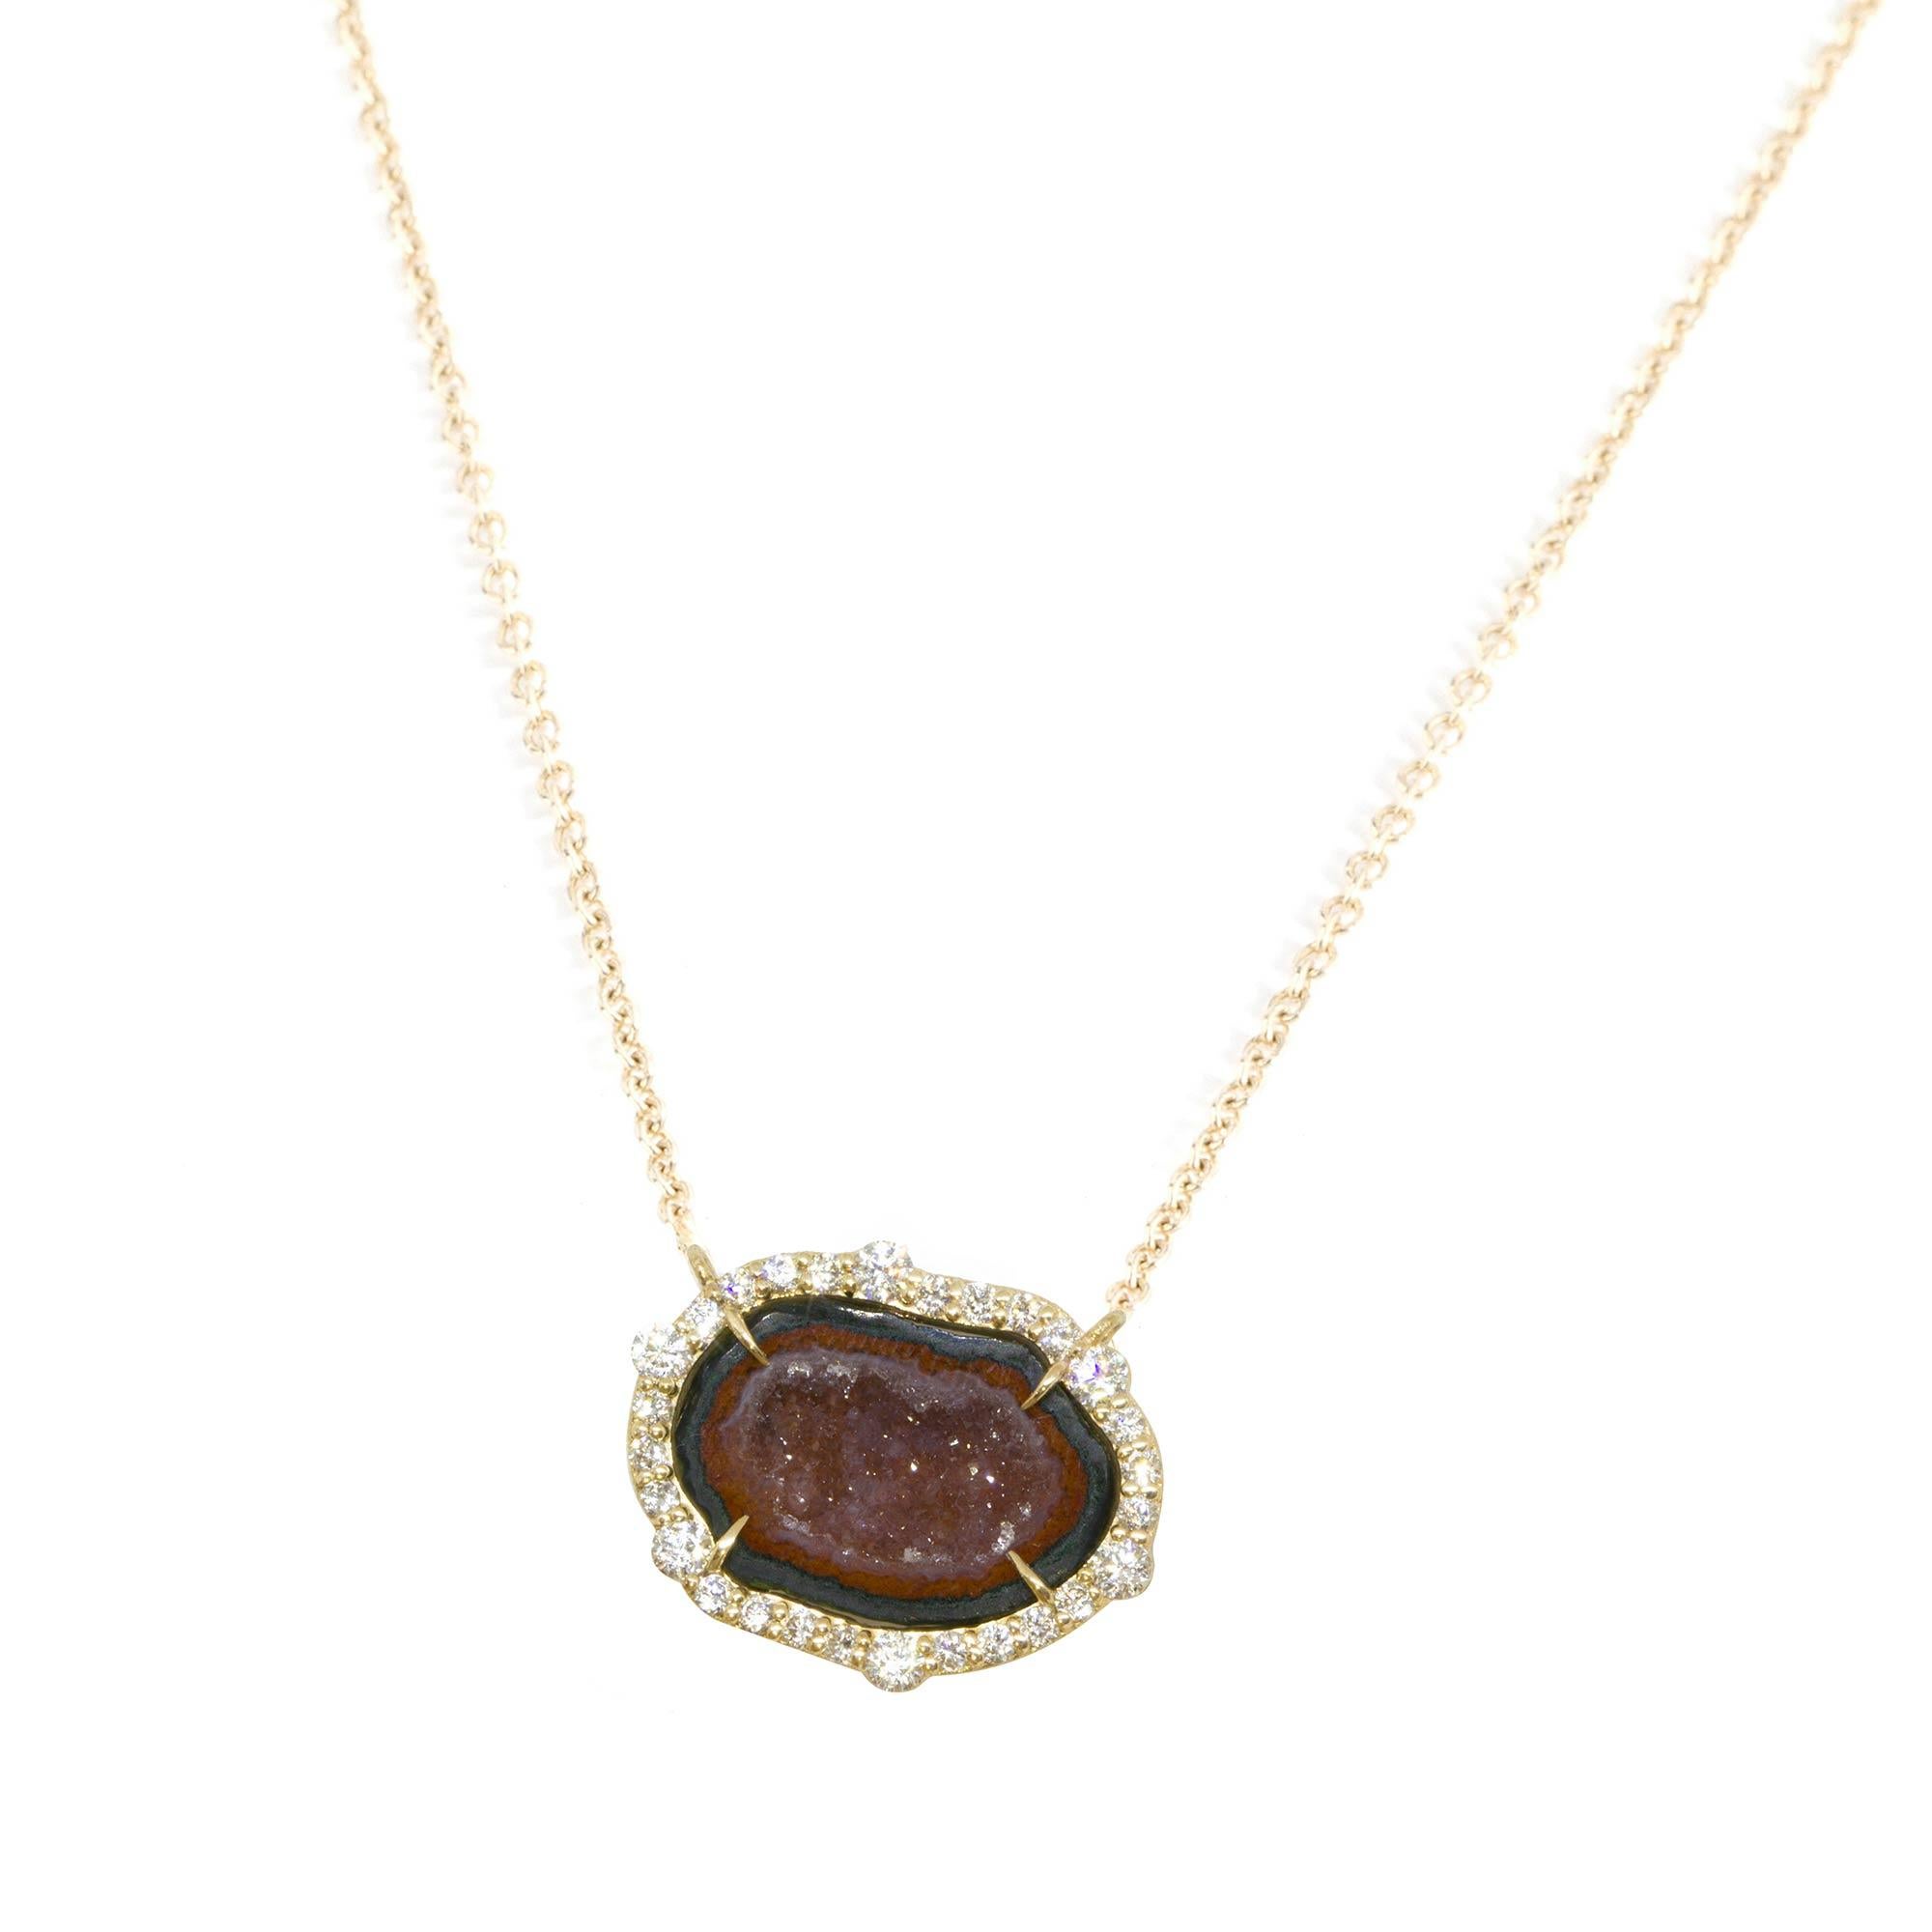 Unsere einzigartige Geoden-Halskette mit lebhaften Diamanten ist ein wahres Vergnügen. Sie ist erdig und einzigartig. Der verschlungene und detaillierte Anhänger verändert Ihren Stil im Handumdrehen, indem er Ihnen einen Bohème-Chic